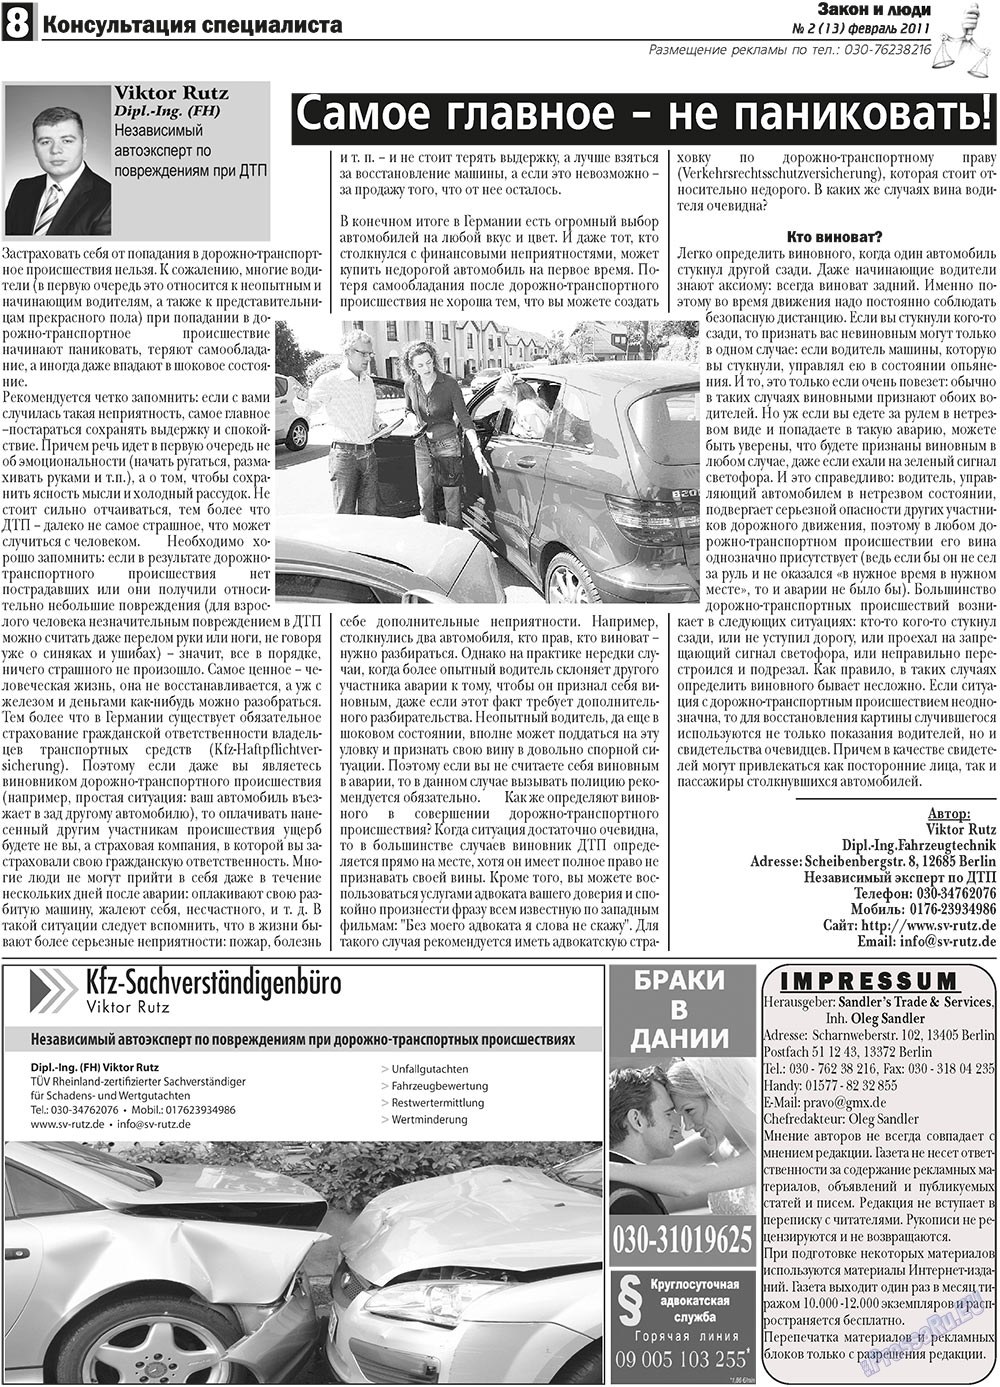 Закон и люди, газета. 2011 №2 стр.8